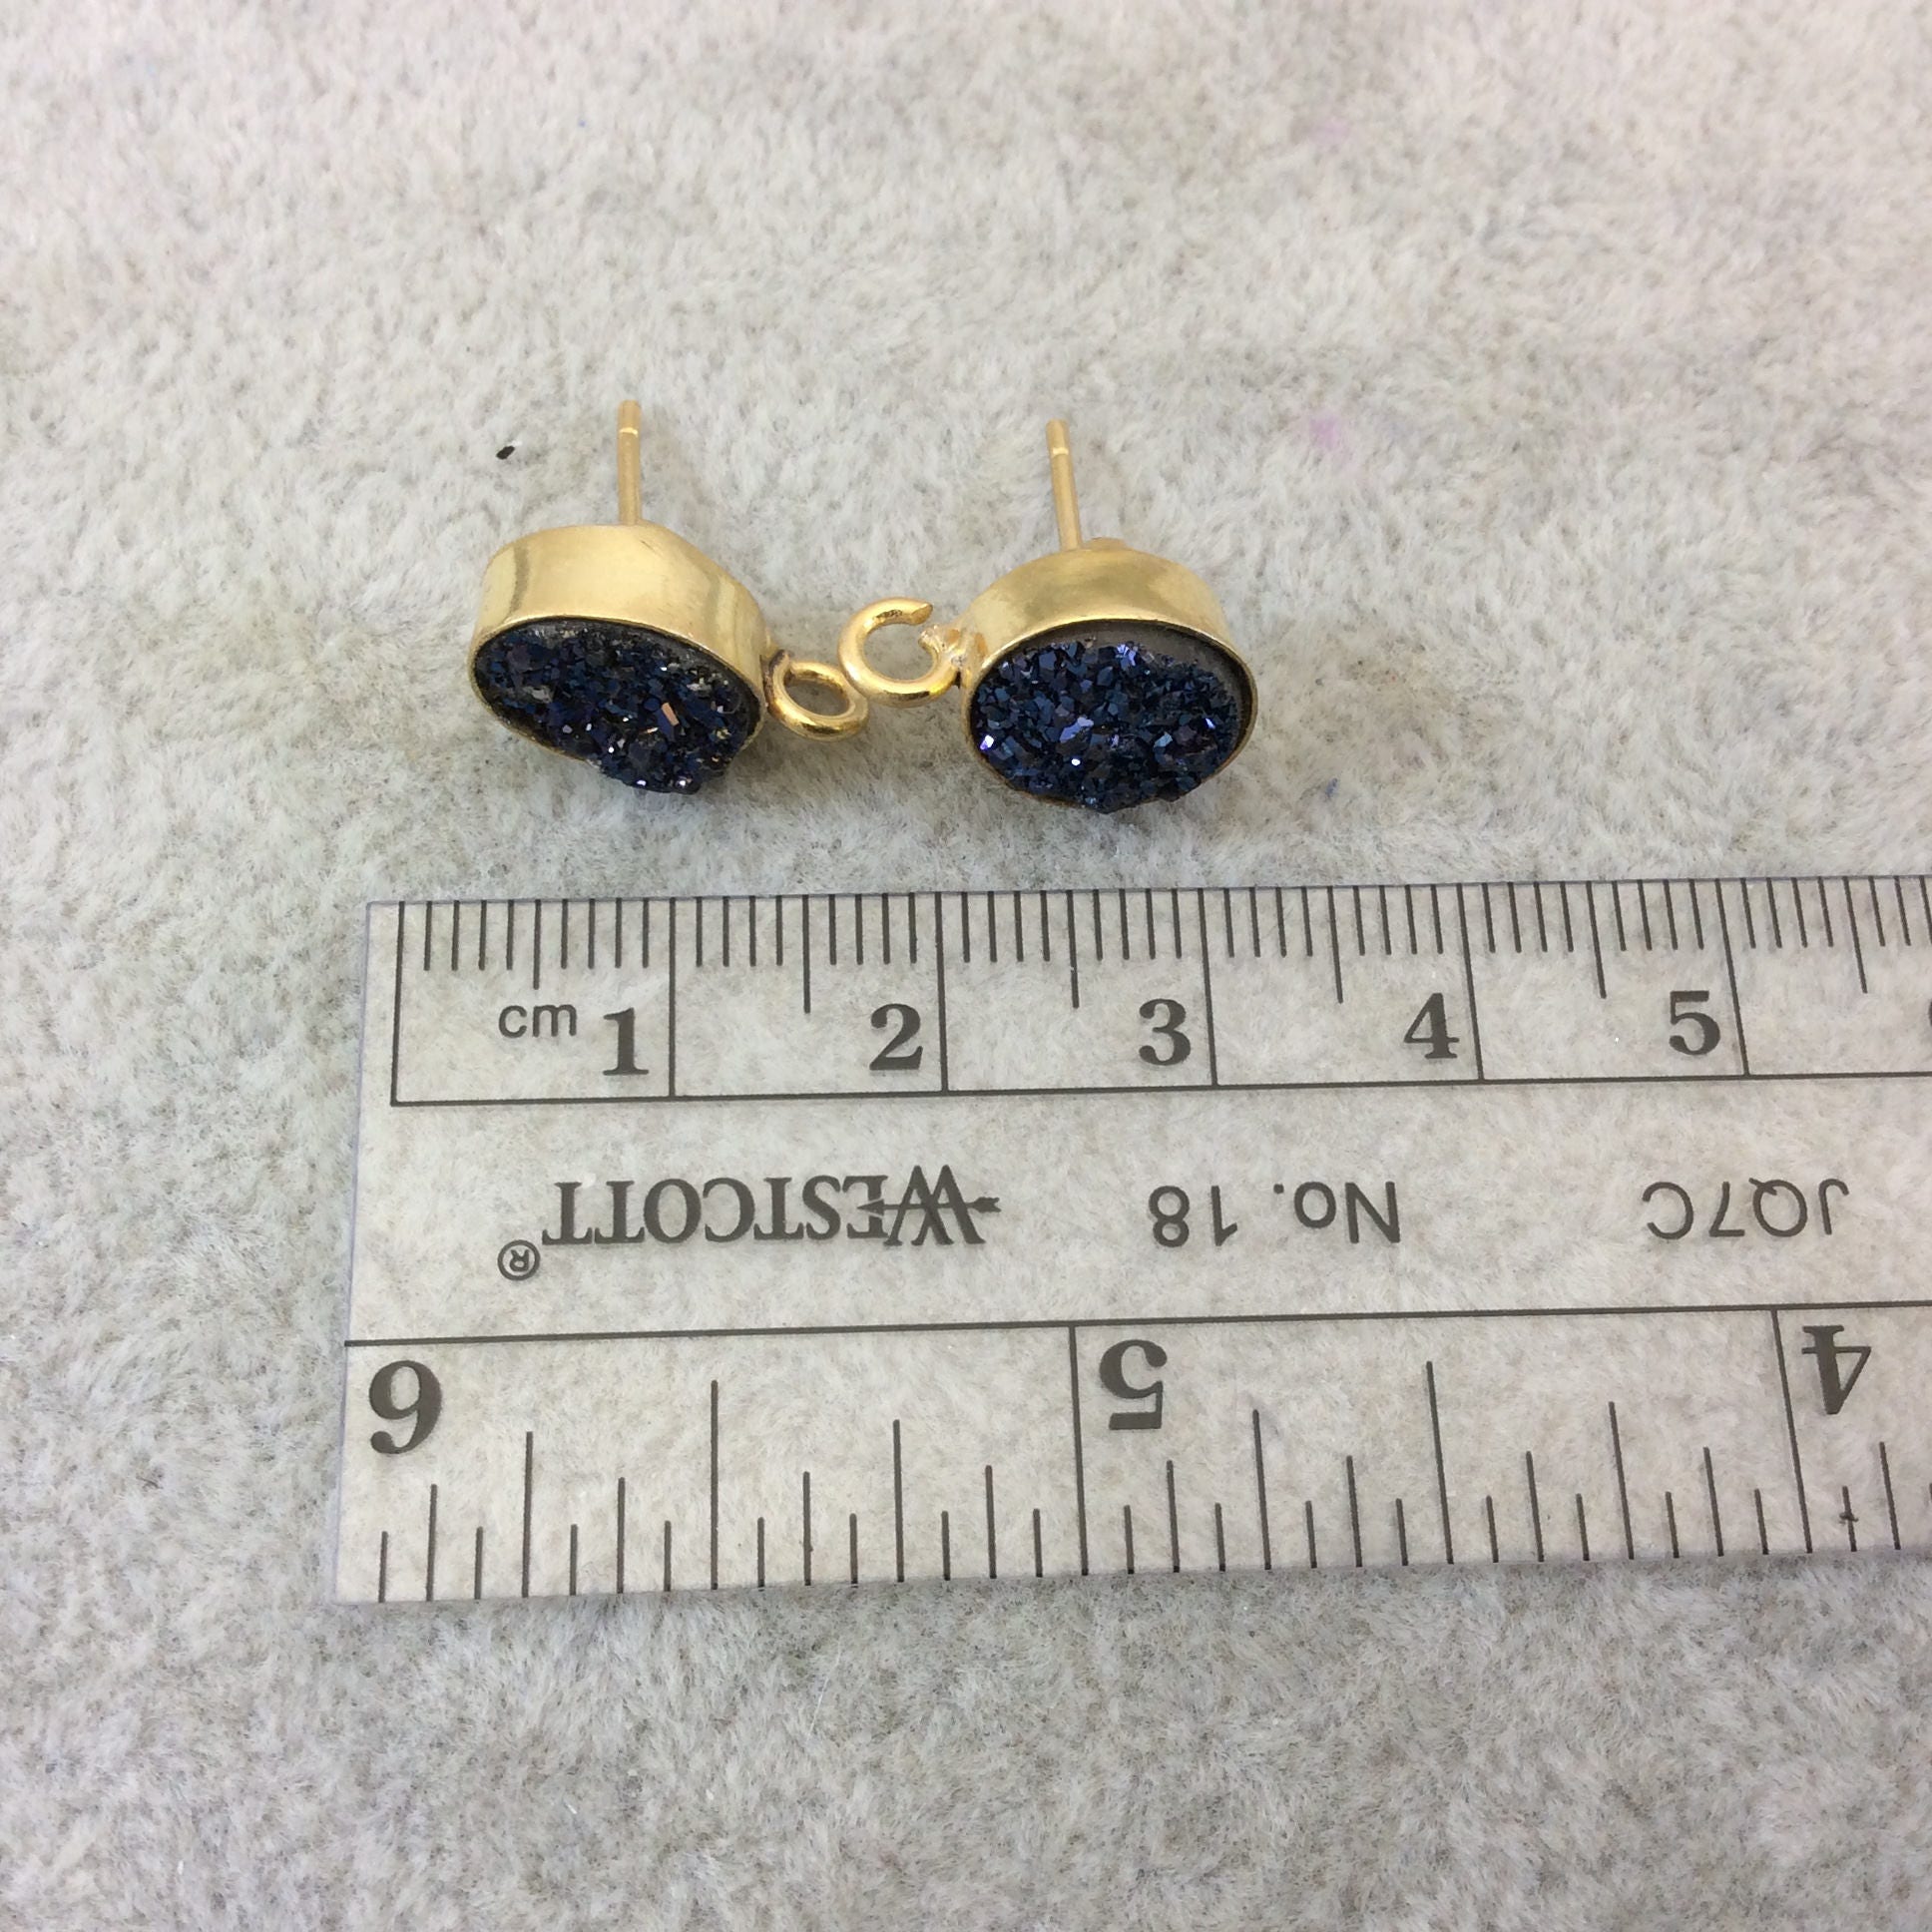 Dark Blue & Gold Post Druzy Earring - Fashion Stud Earrings